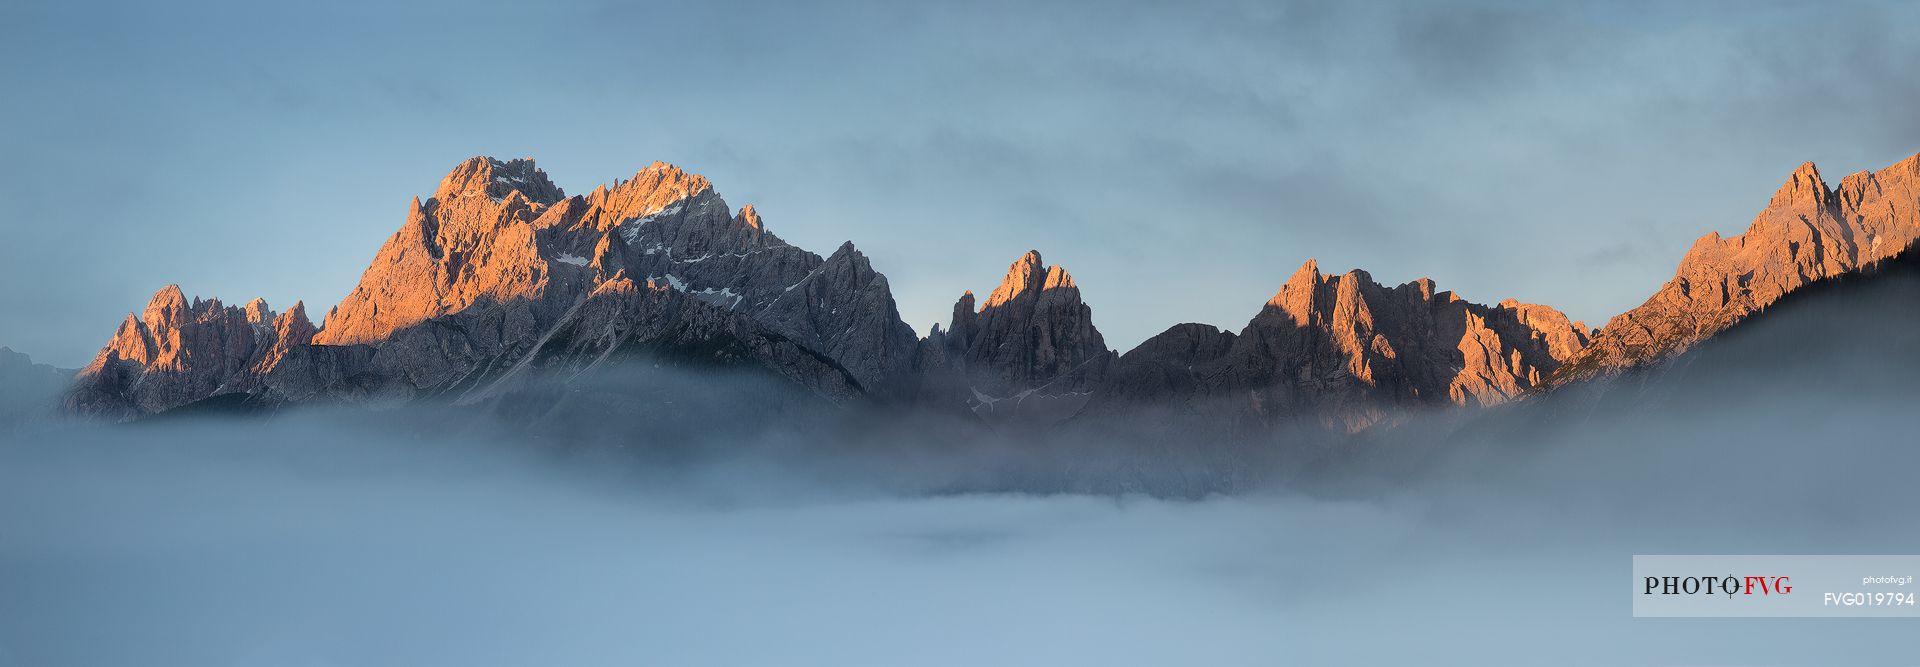 Sesto Dolomites at dawn ;
From left : Cima Colesei, Cima Nove, Croda Rossa, Cima Undici, Croda dei Toni, Pulpito, Cima Una, Croda Fiscalina, Punta Langlahn, Pusteria valley, Italy